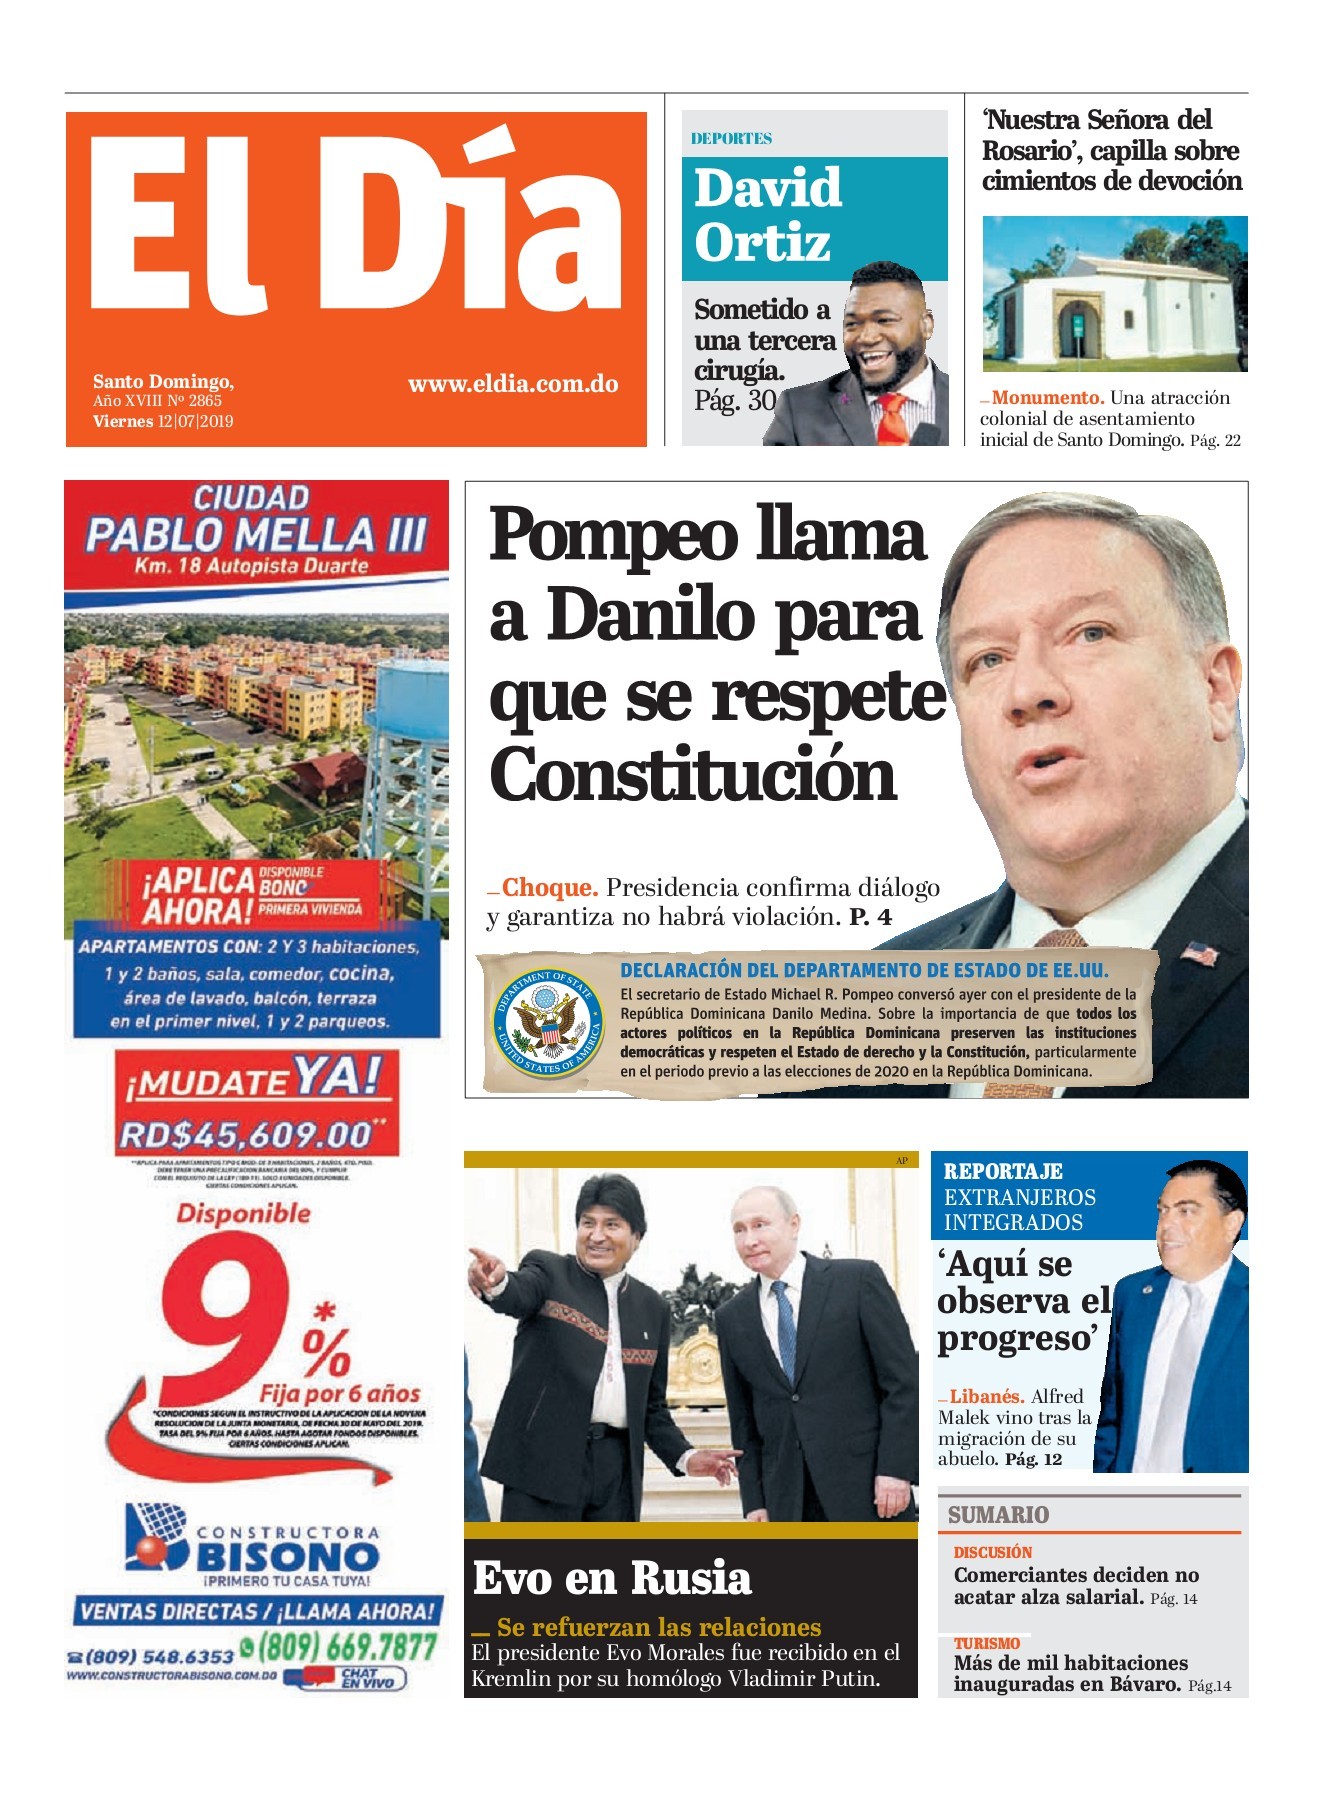 Portada Periódico El Día, Viernes 12 de Julio, 2019